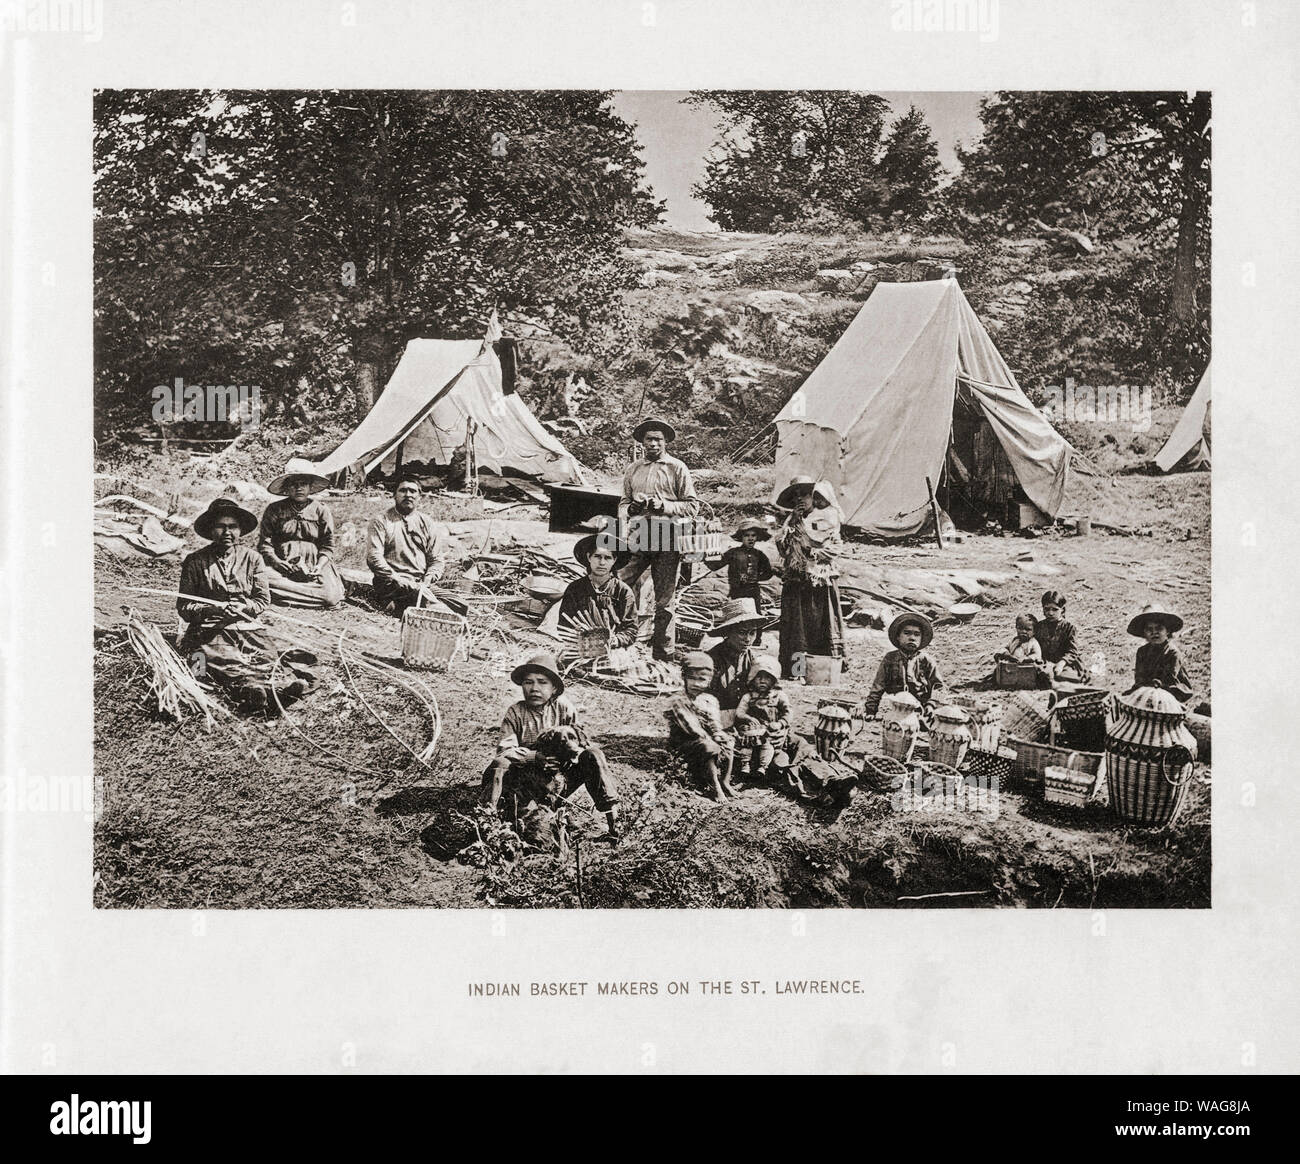 Vanniers indiens sur le fleuve Saint-Laurent dans les années 1890. À partir de l'ouvrage Les États-Unis d'Amérique - une centaine d'illustrations à partir de négatifs Albertype récente de la plupart des scènes de notre pays, publié en 1893. Banque D'Images